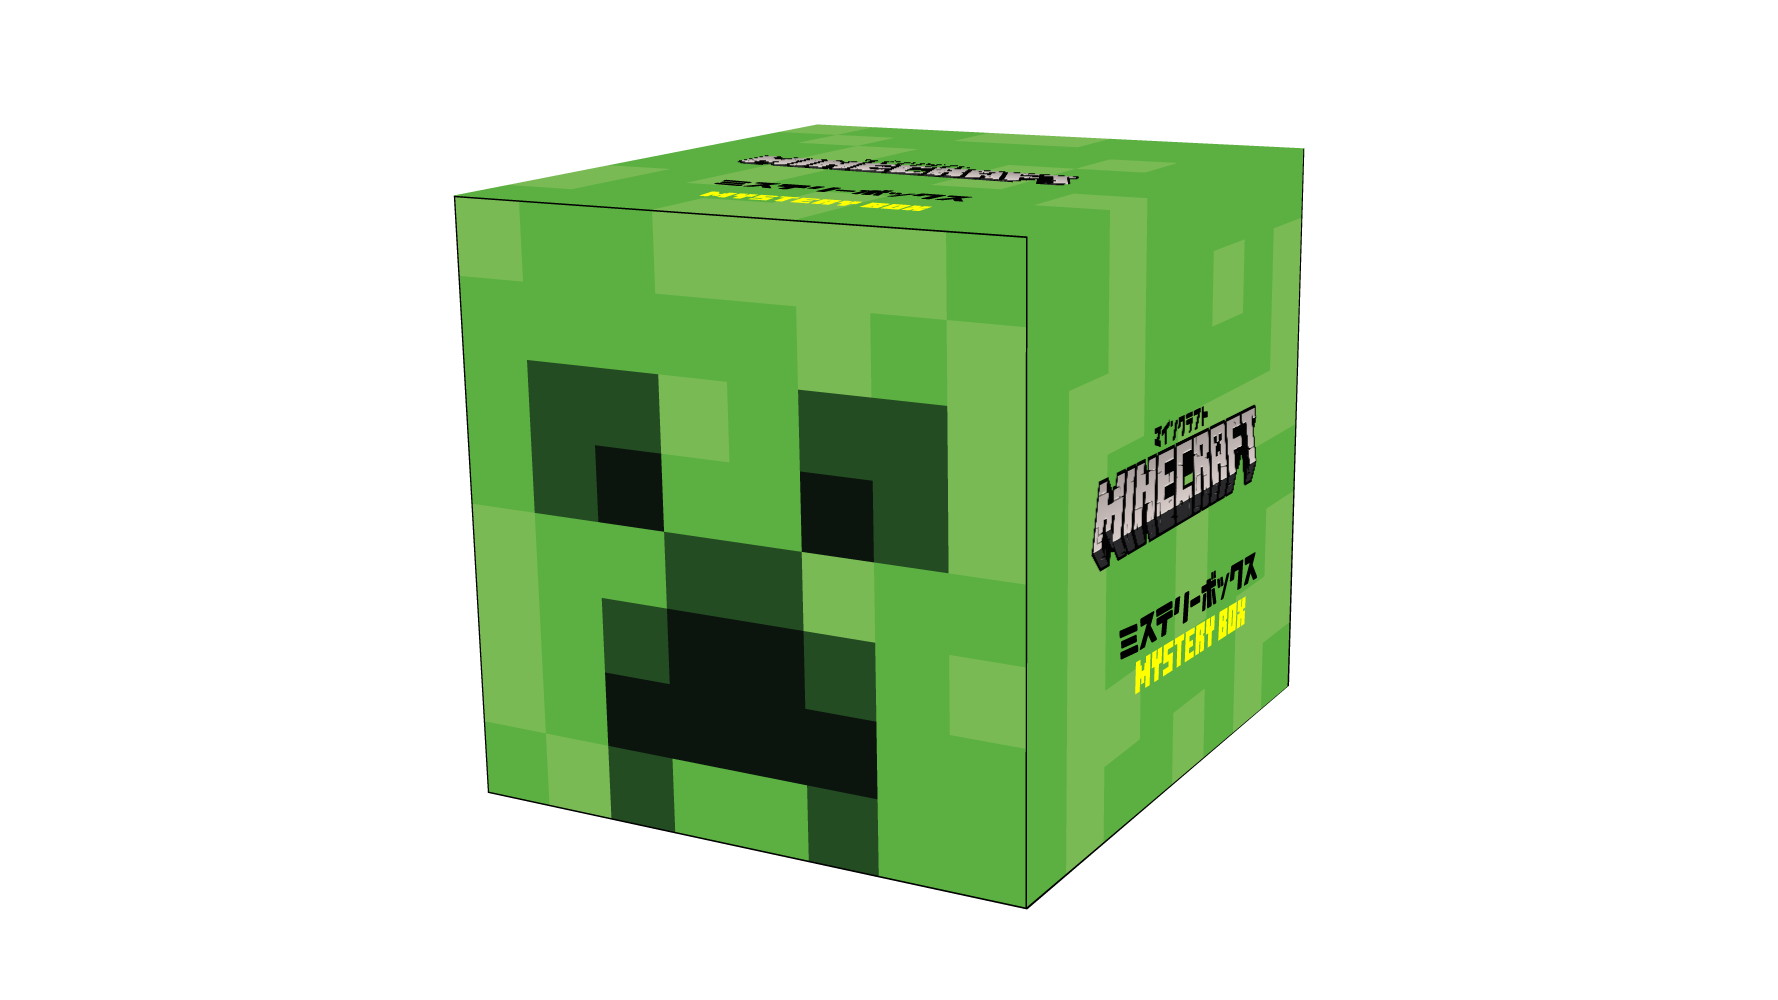 Minecraft グッズが詰まった マインクラフト ミステリーボックス 第3弾が全国のイオンとゲオで元日より数量限定販売 日本未発売のものも収録 19年12月26日 Biglobeニュース